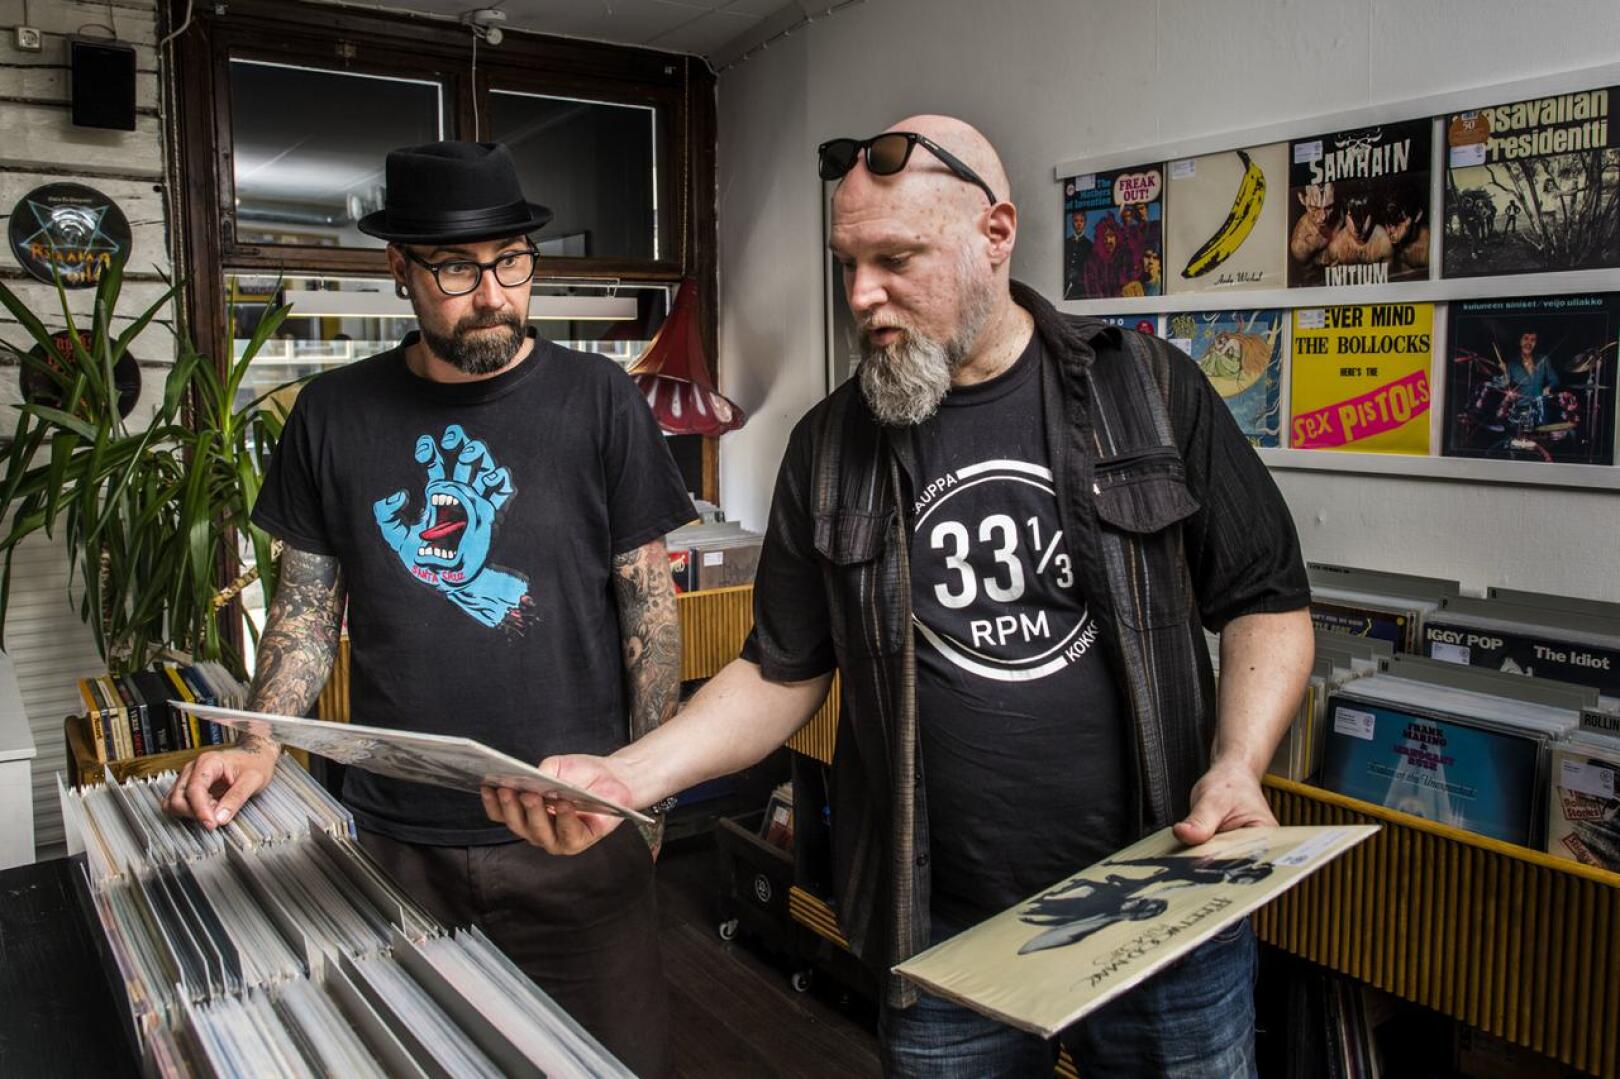 Marko Säilynoja etsi Fleetwood Macia ja Sonic Youthia, ja ne hän löysi. 33 RPM:n kokoelma painottuu vanhoihin levyihin mutta uuttakin tuotantoa seurataan jatkuvasti.